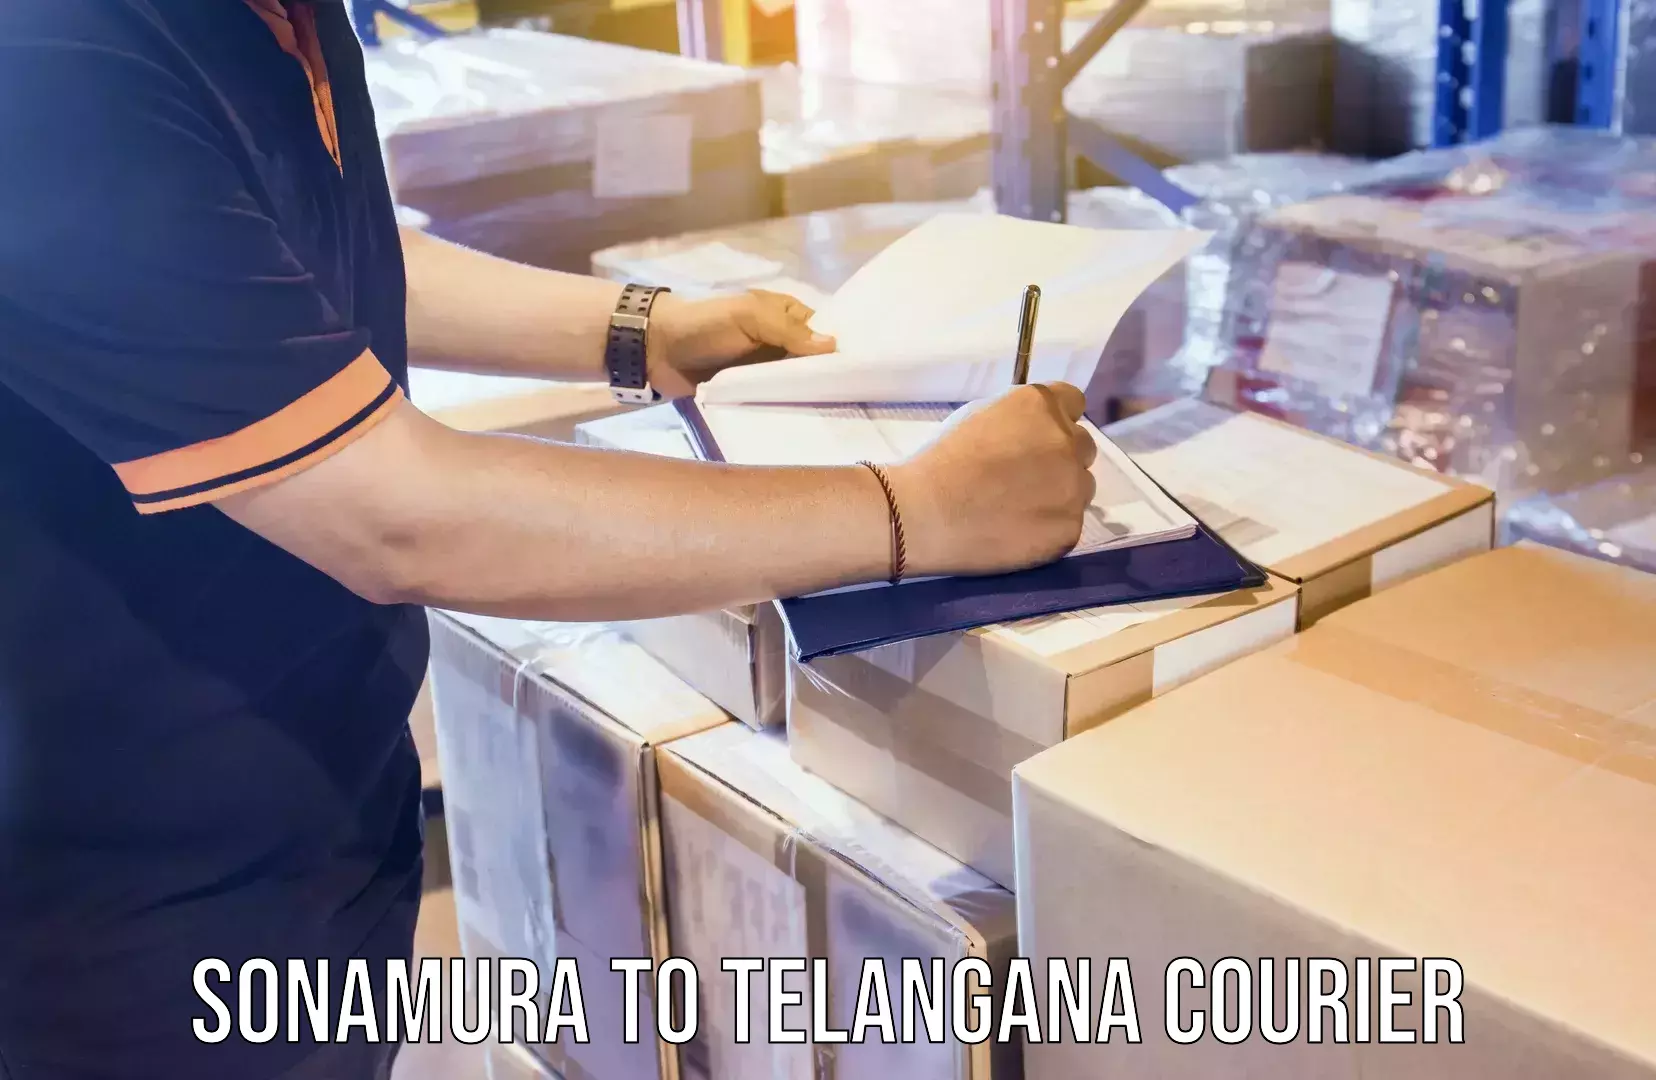 Premium courier services Sonamura to Telangana